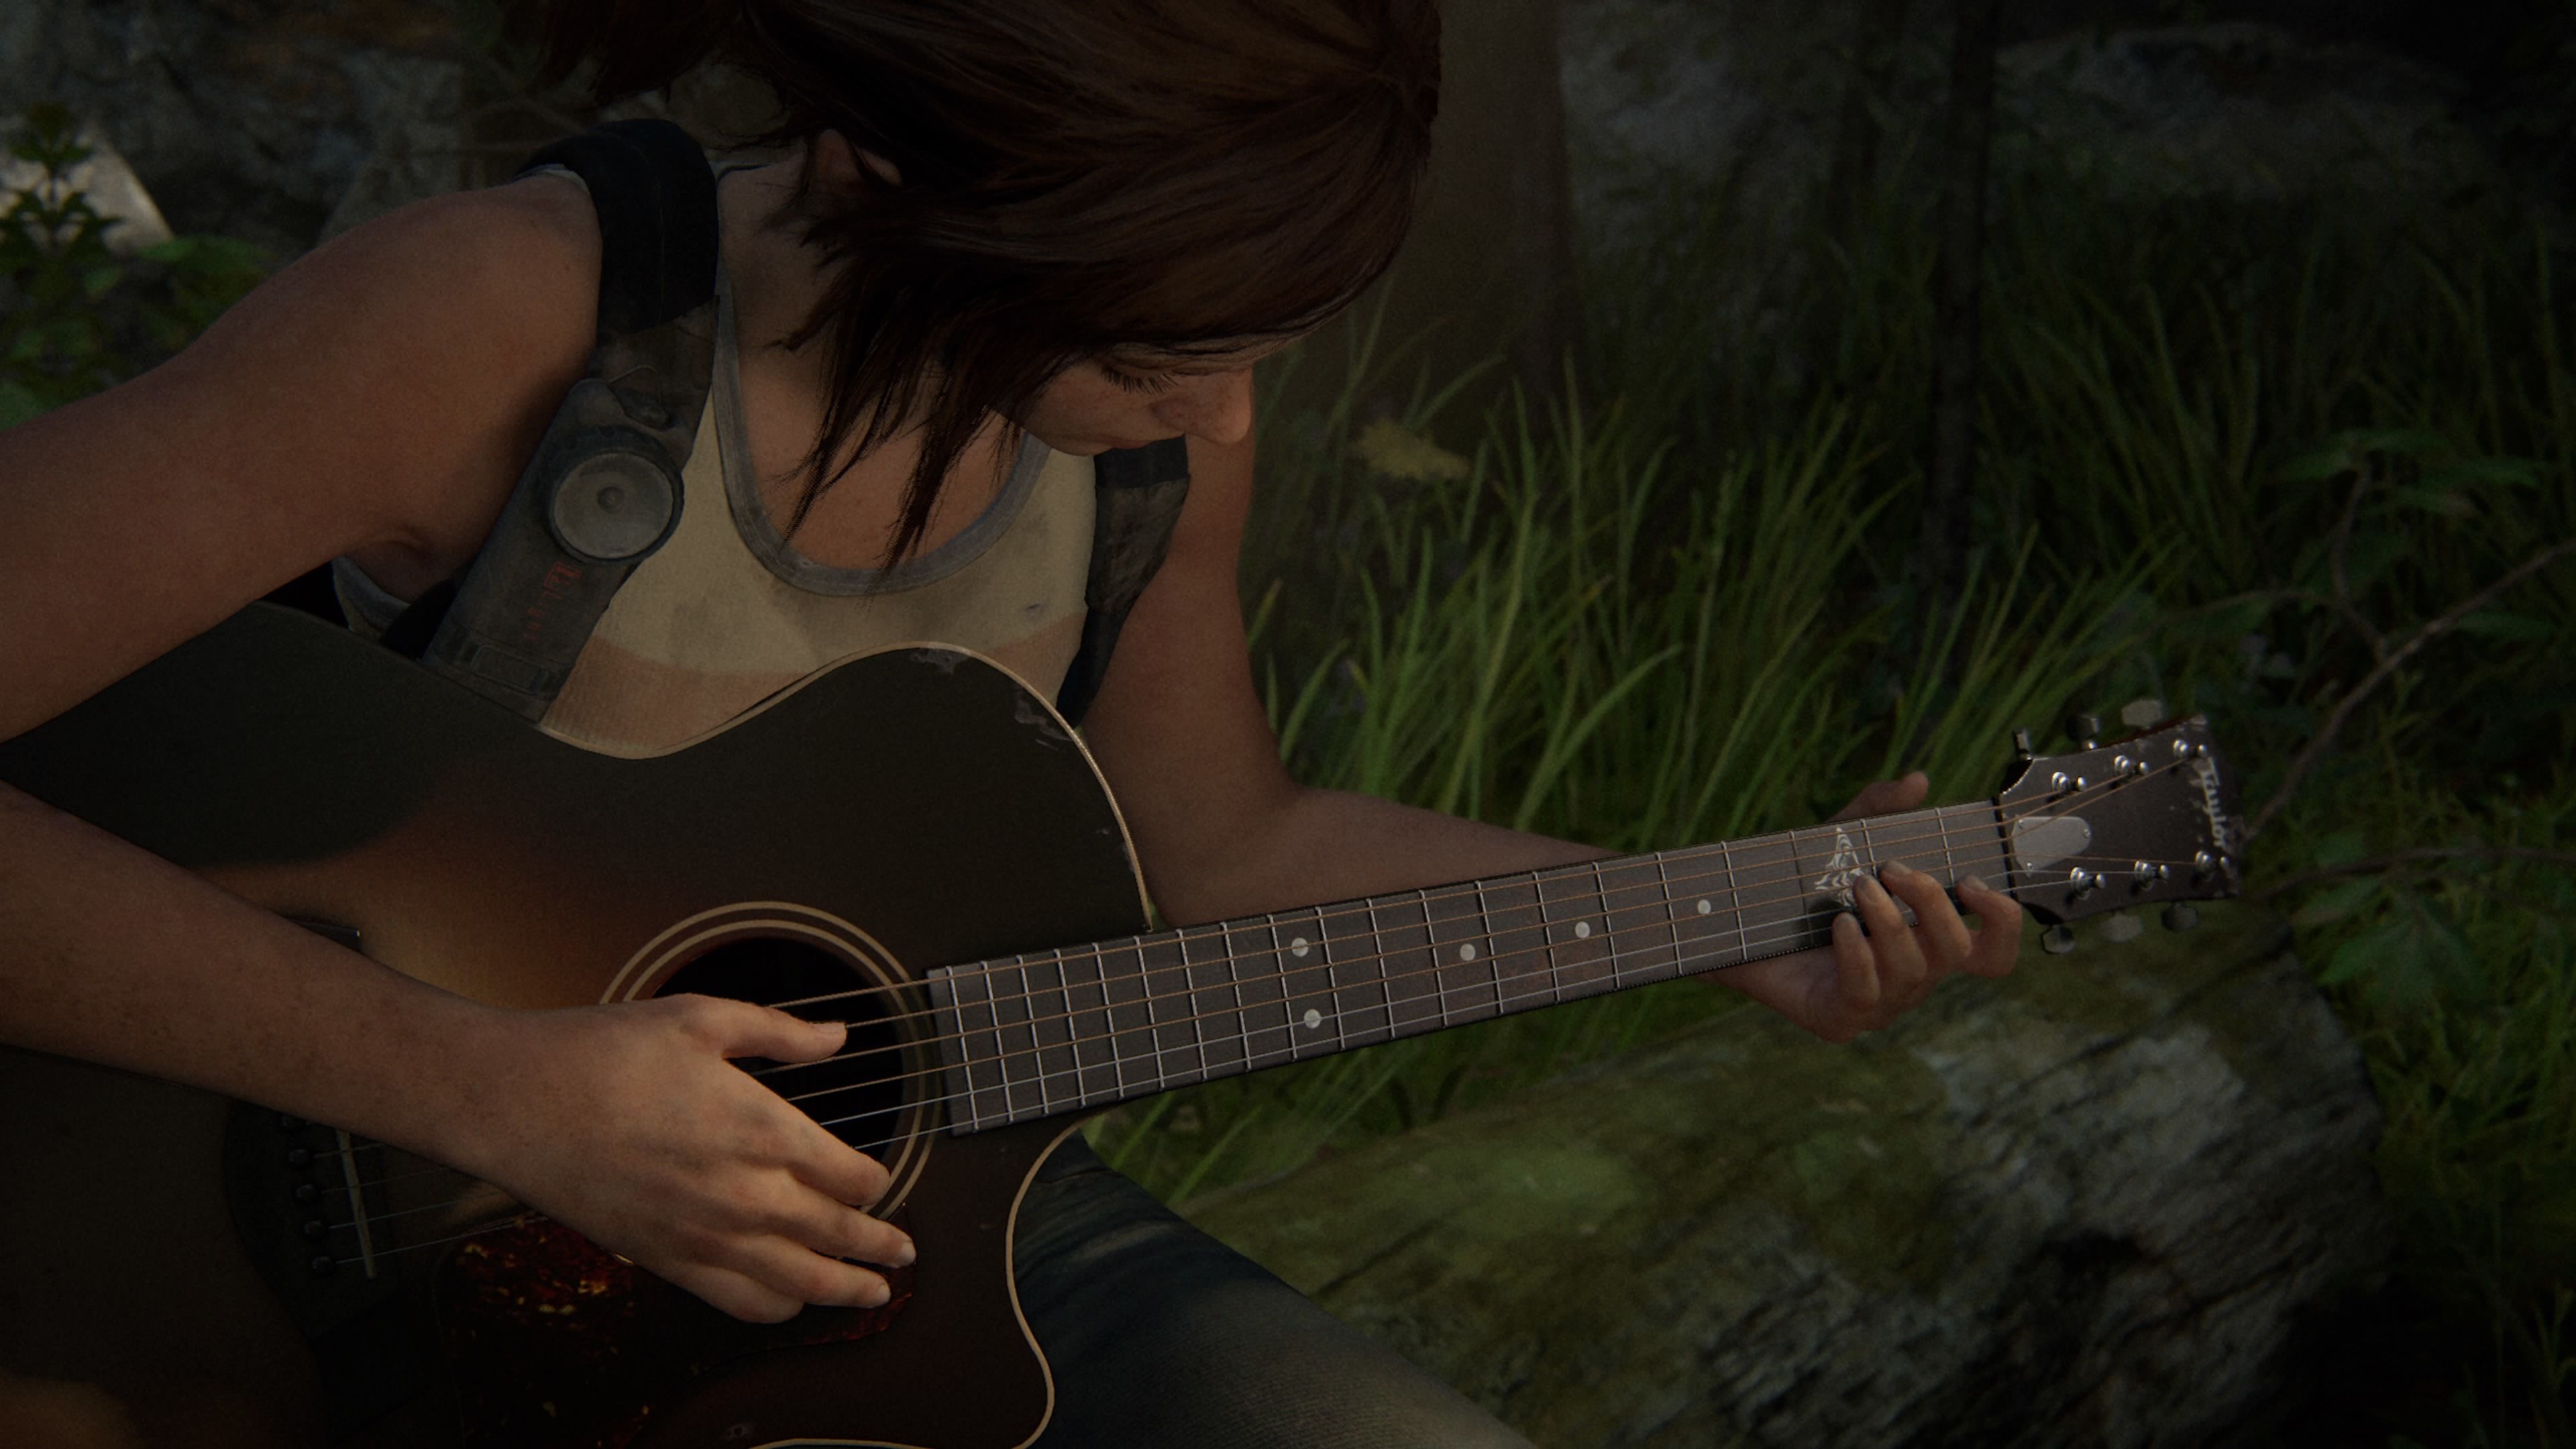 Гитара Элли в The Last of Us Part II.
Скриншот: GameMAG